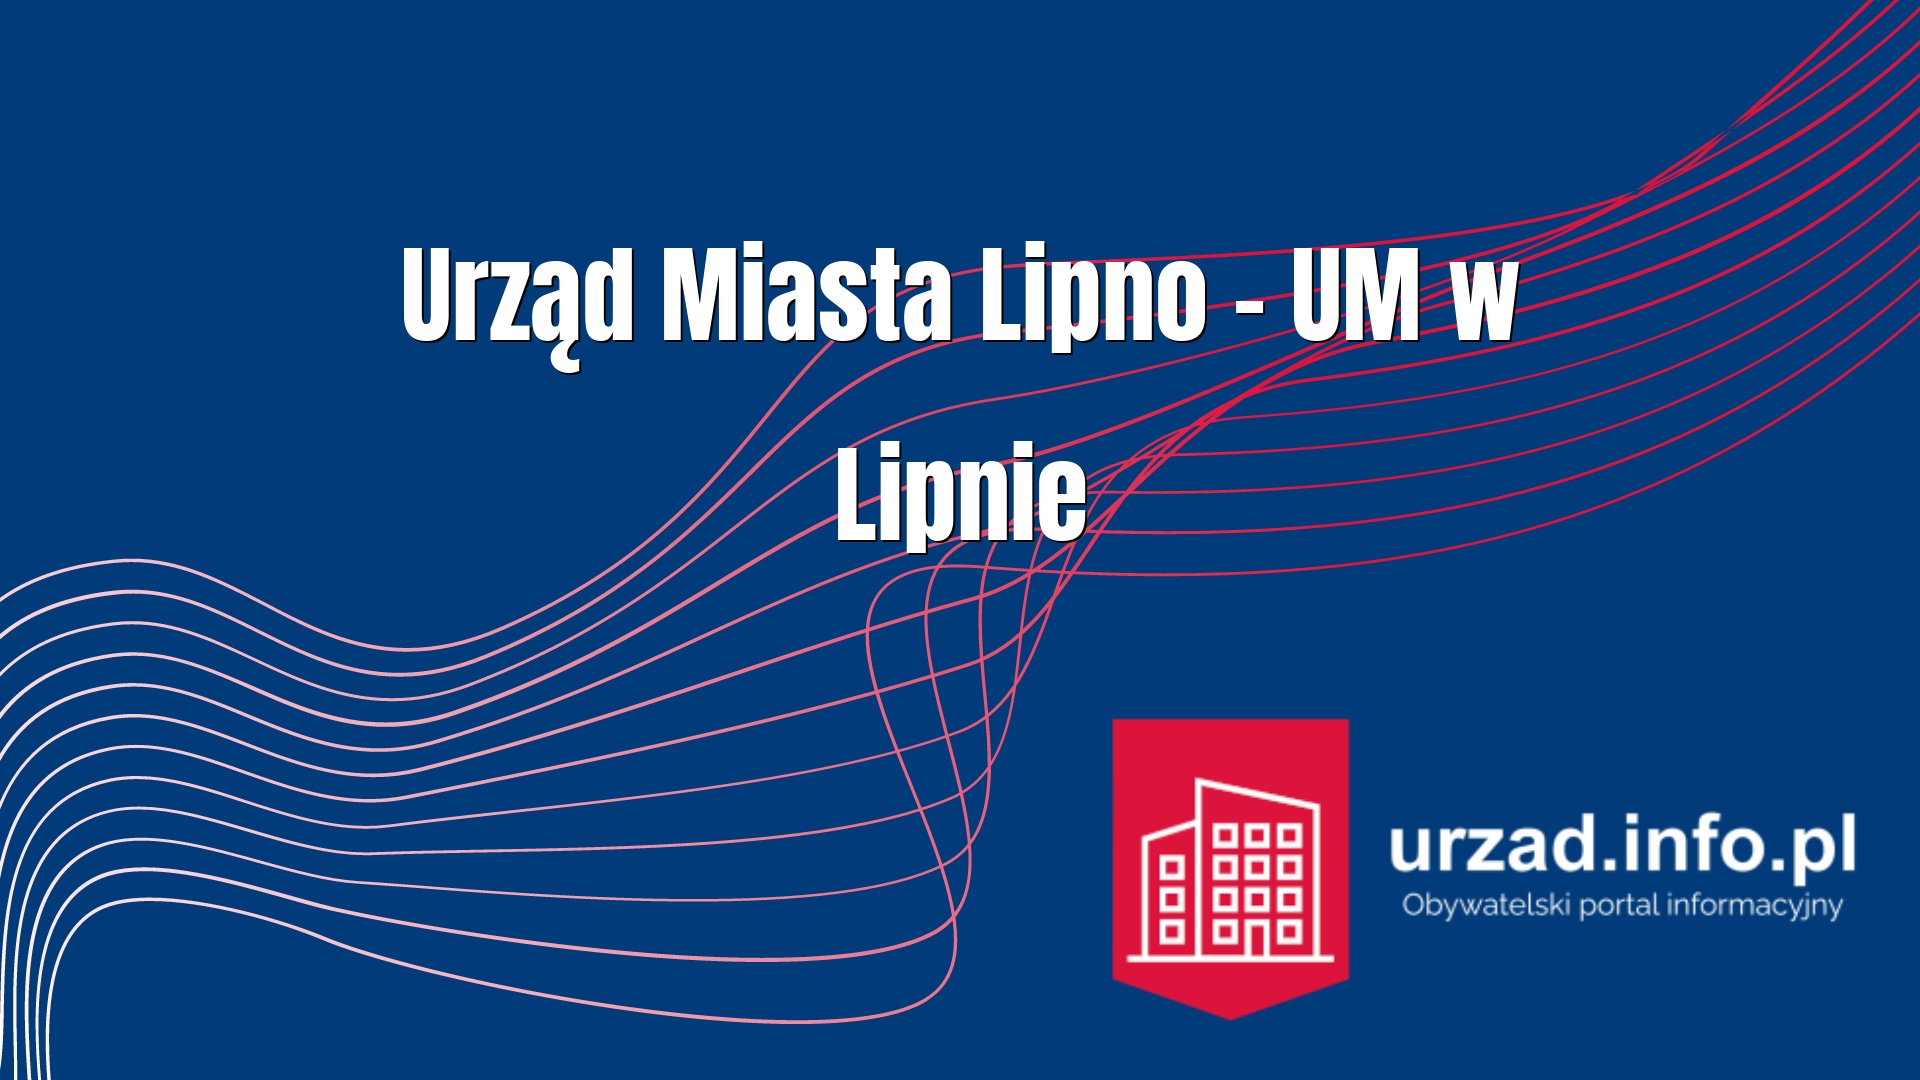 Urząd Miasta Lipno – UM w Lipnie